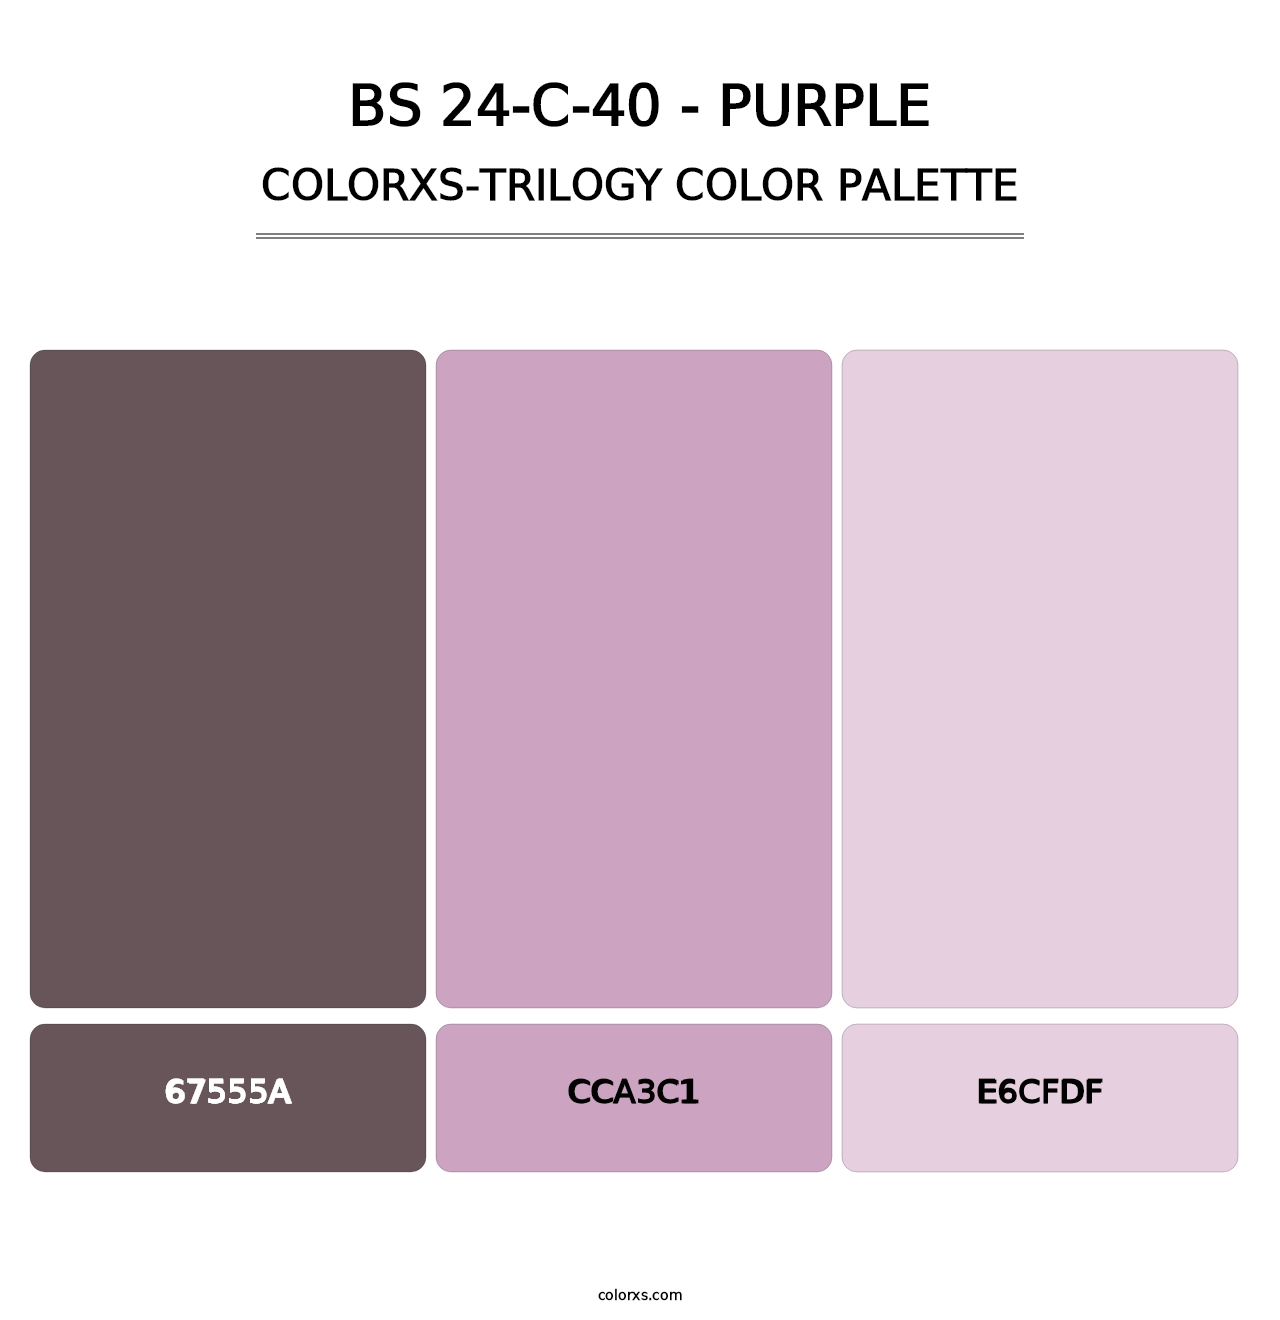 BS 24-C-40 - Purple - Colorxs Trilogy Palette